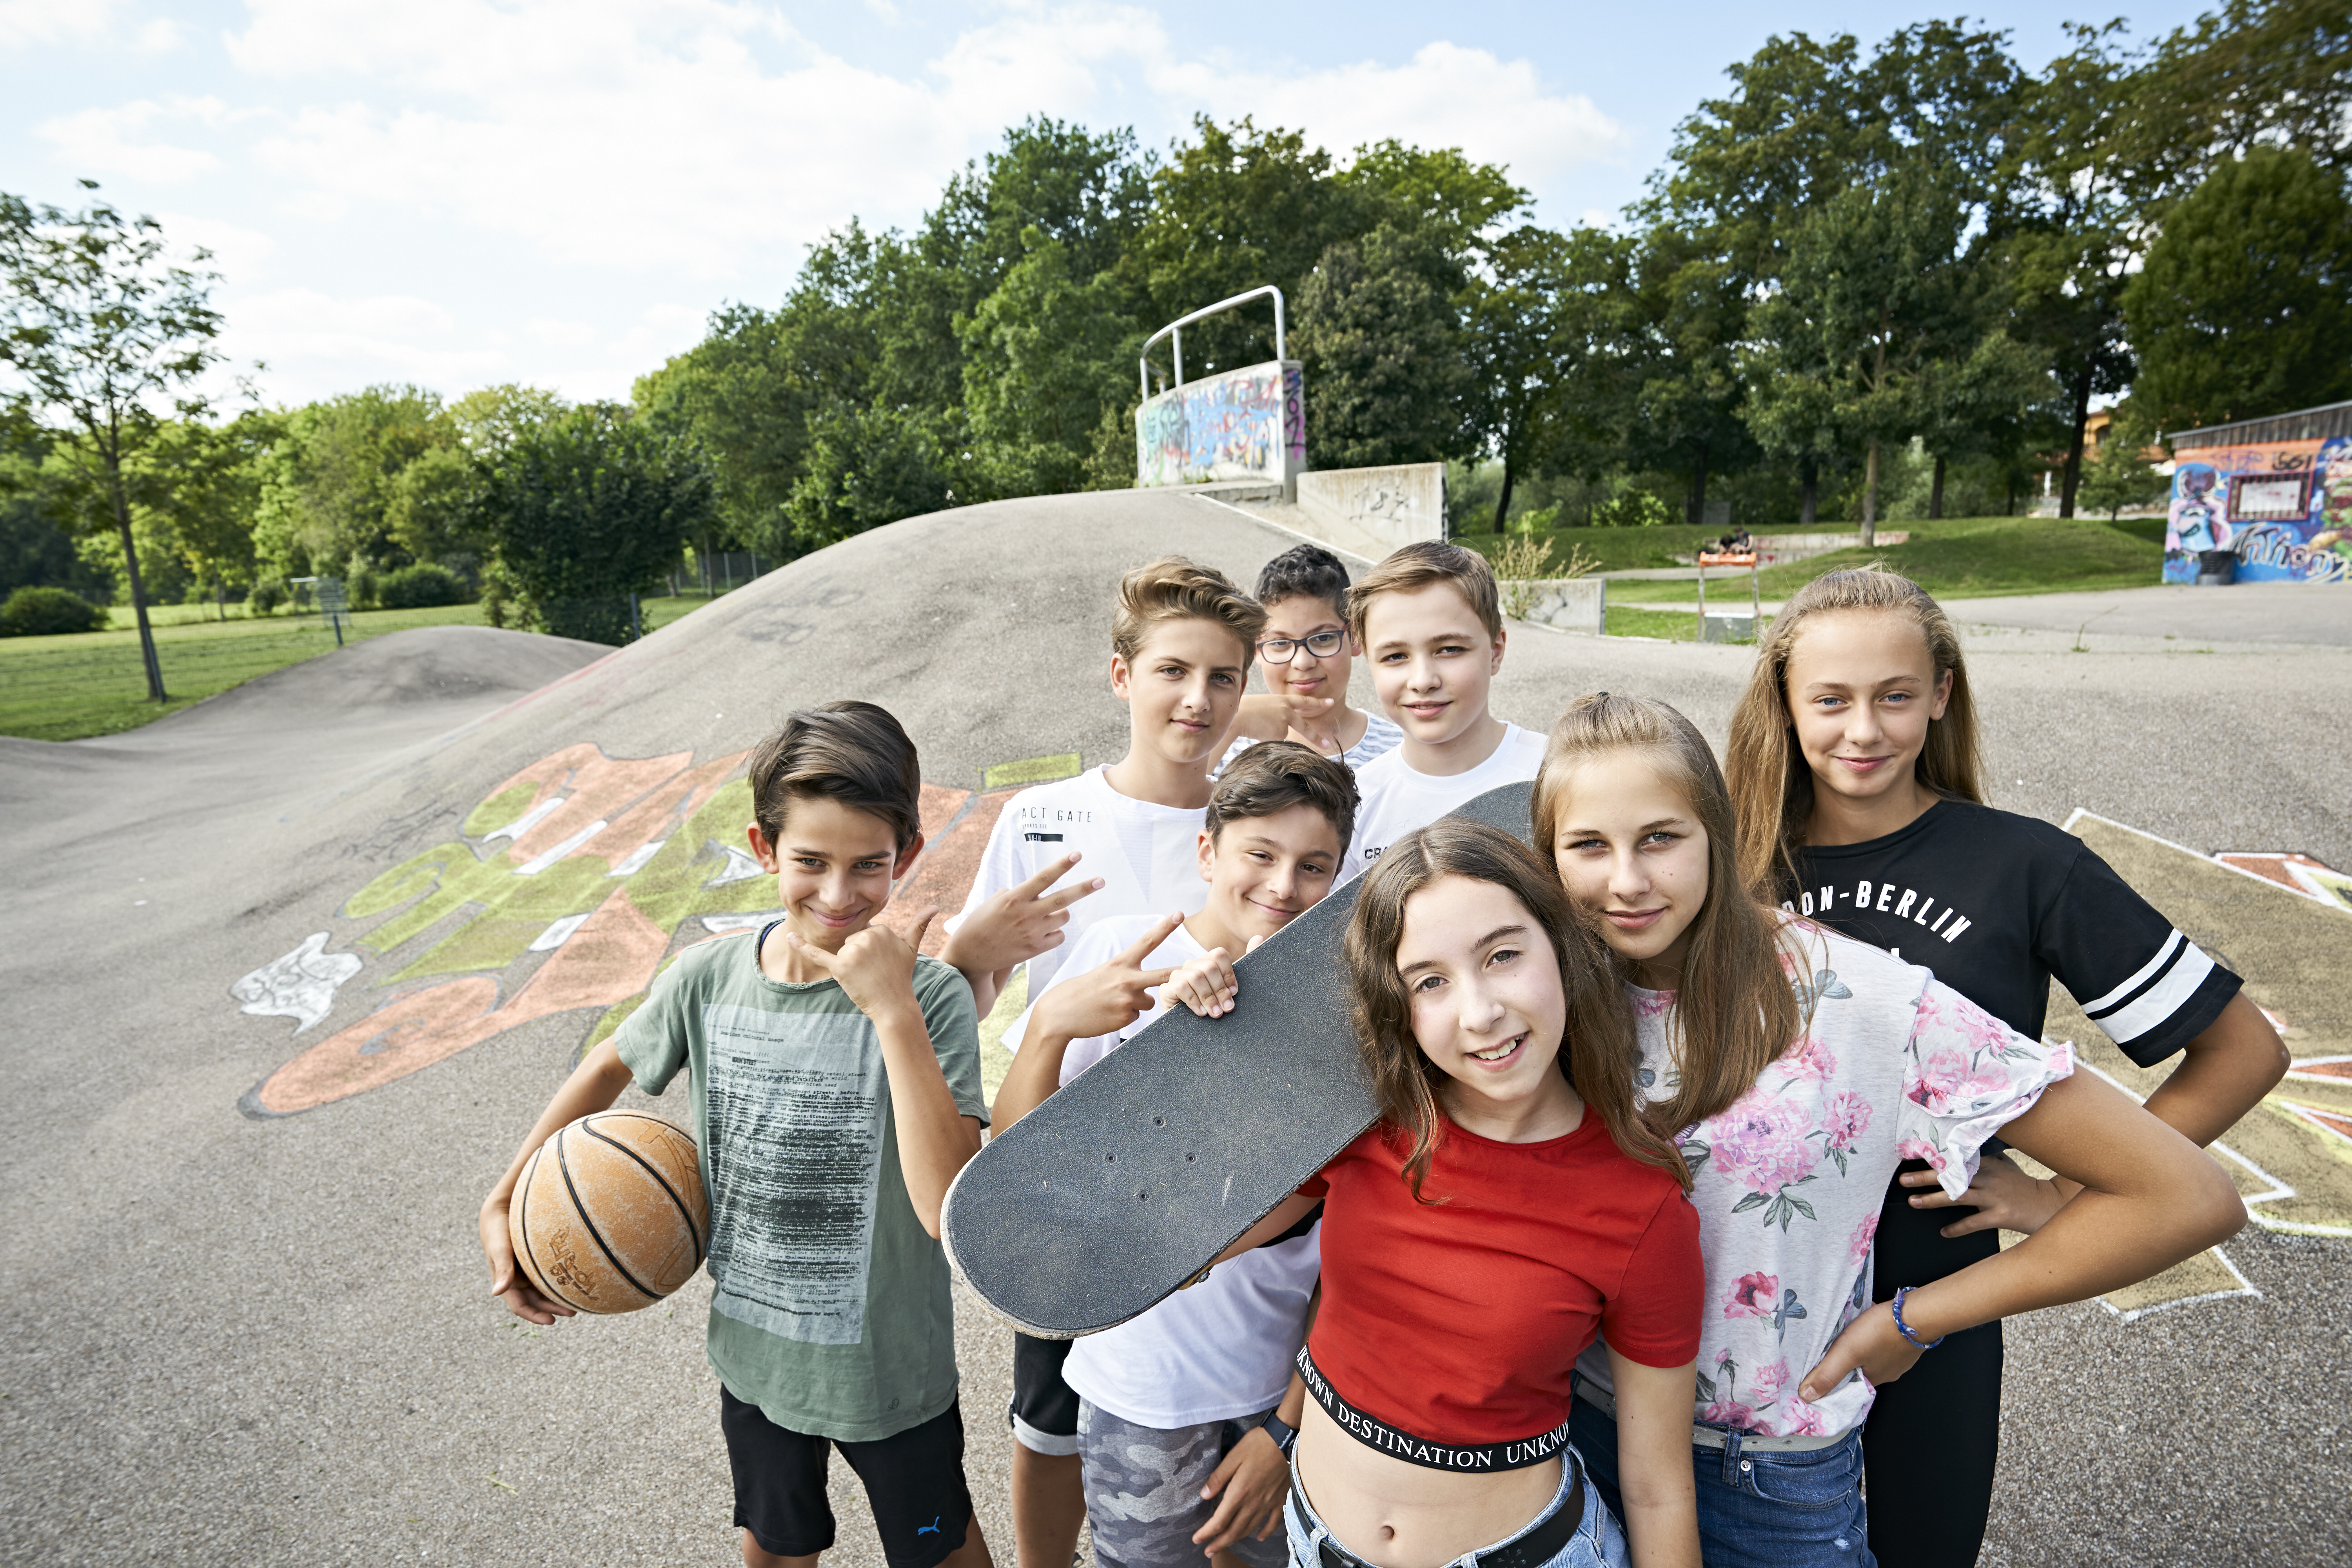 Acht Jugendliche stehen mit Skateboards und einem Basektball auf einer Skater-Anlage